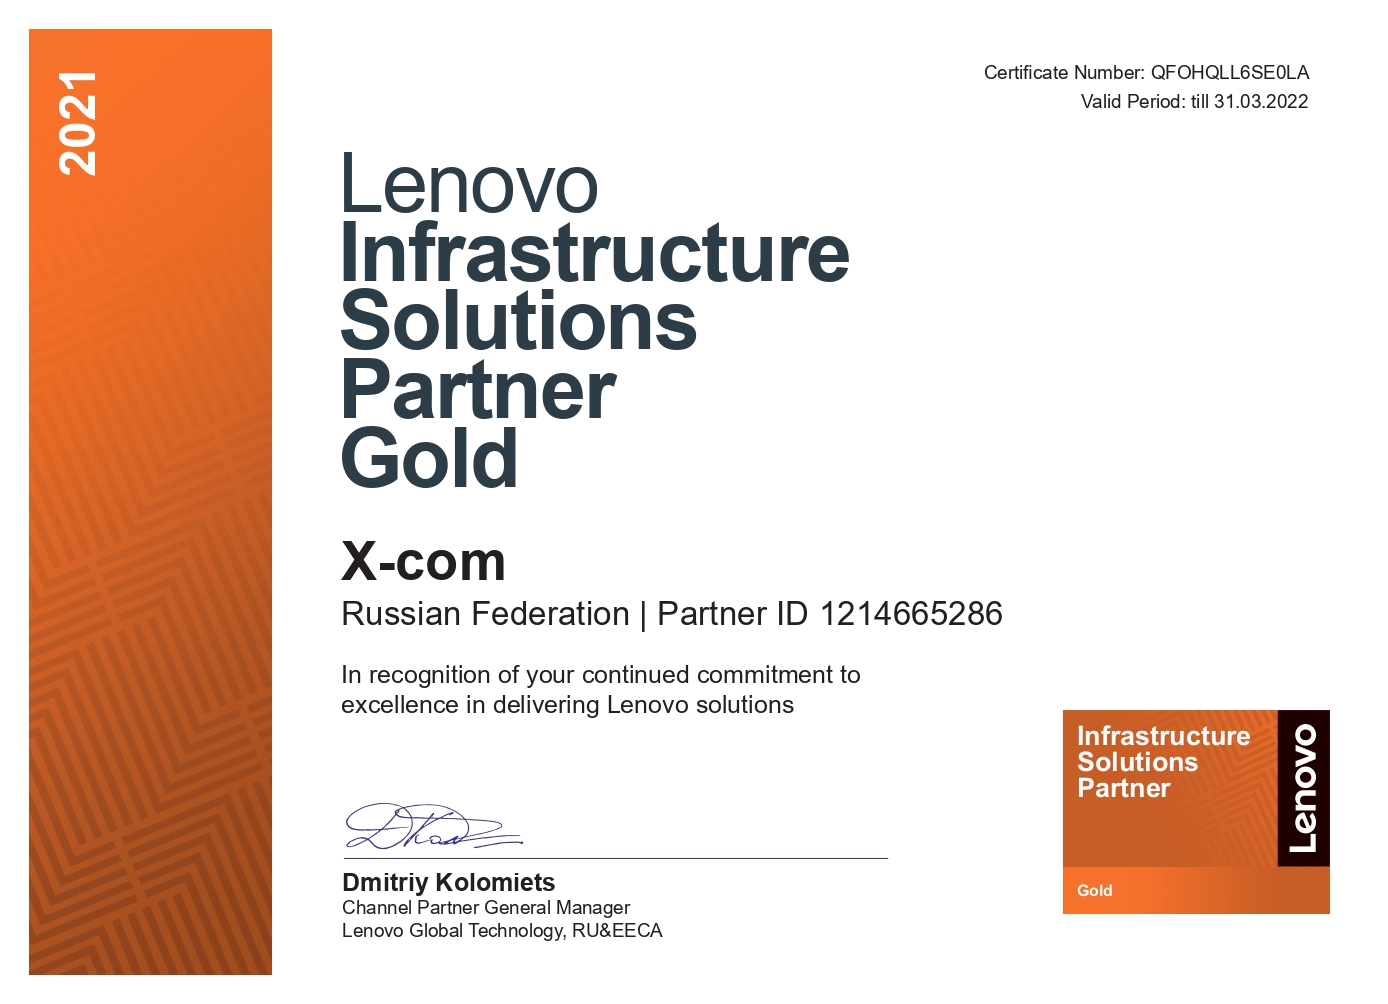 X-Com – Золотой партнер Lenovo по направлению инфраструктурных решений